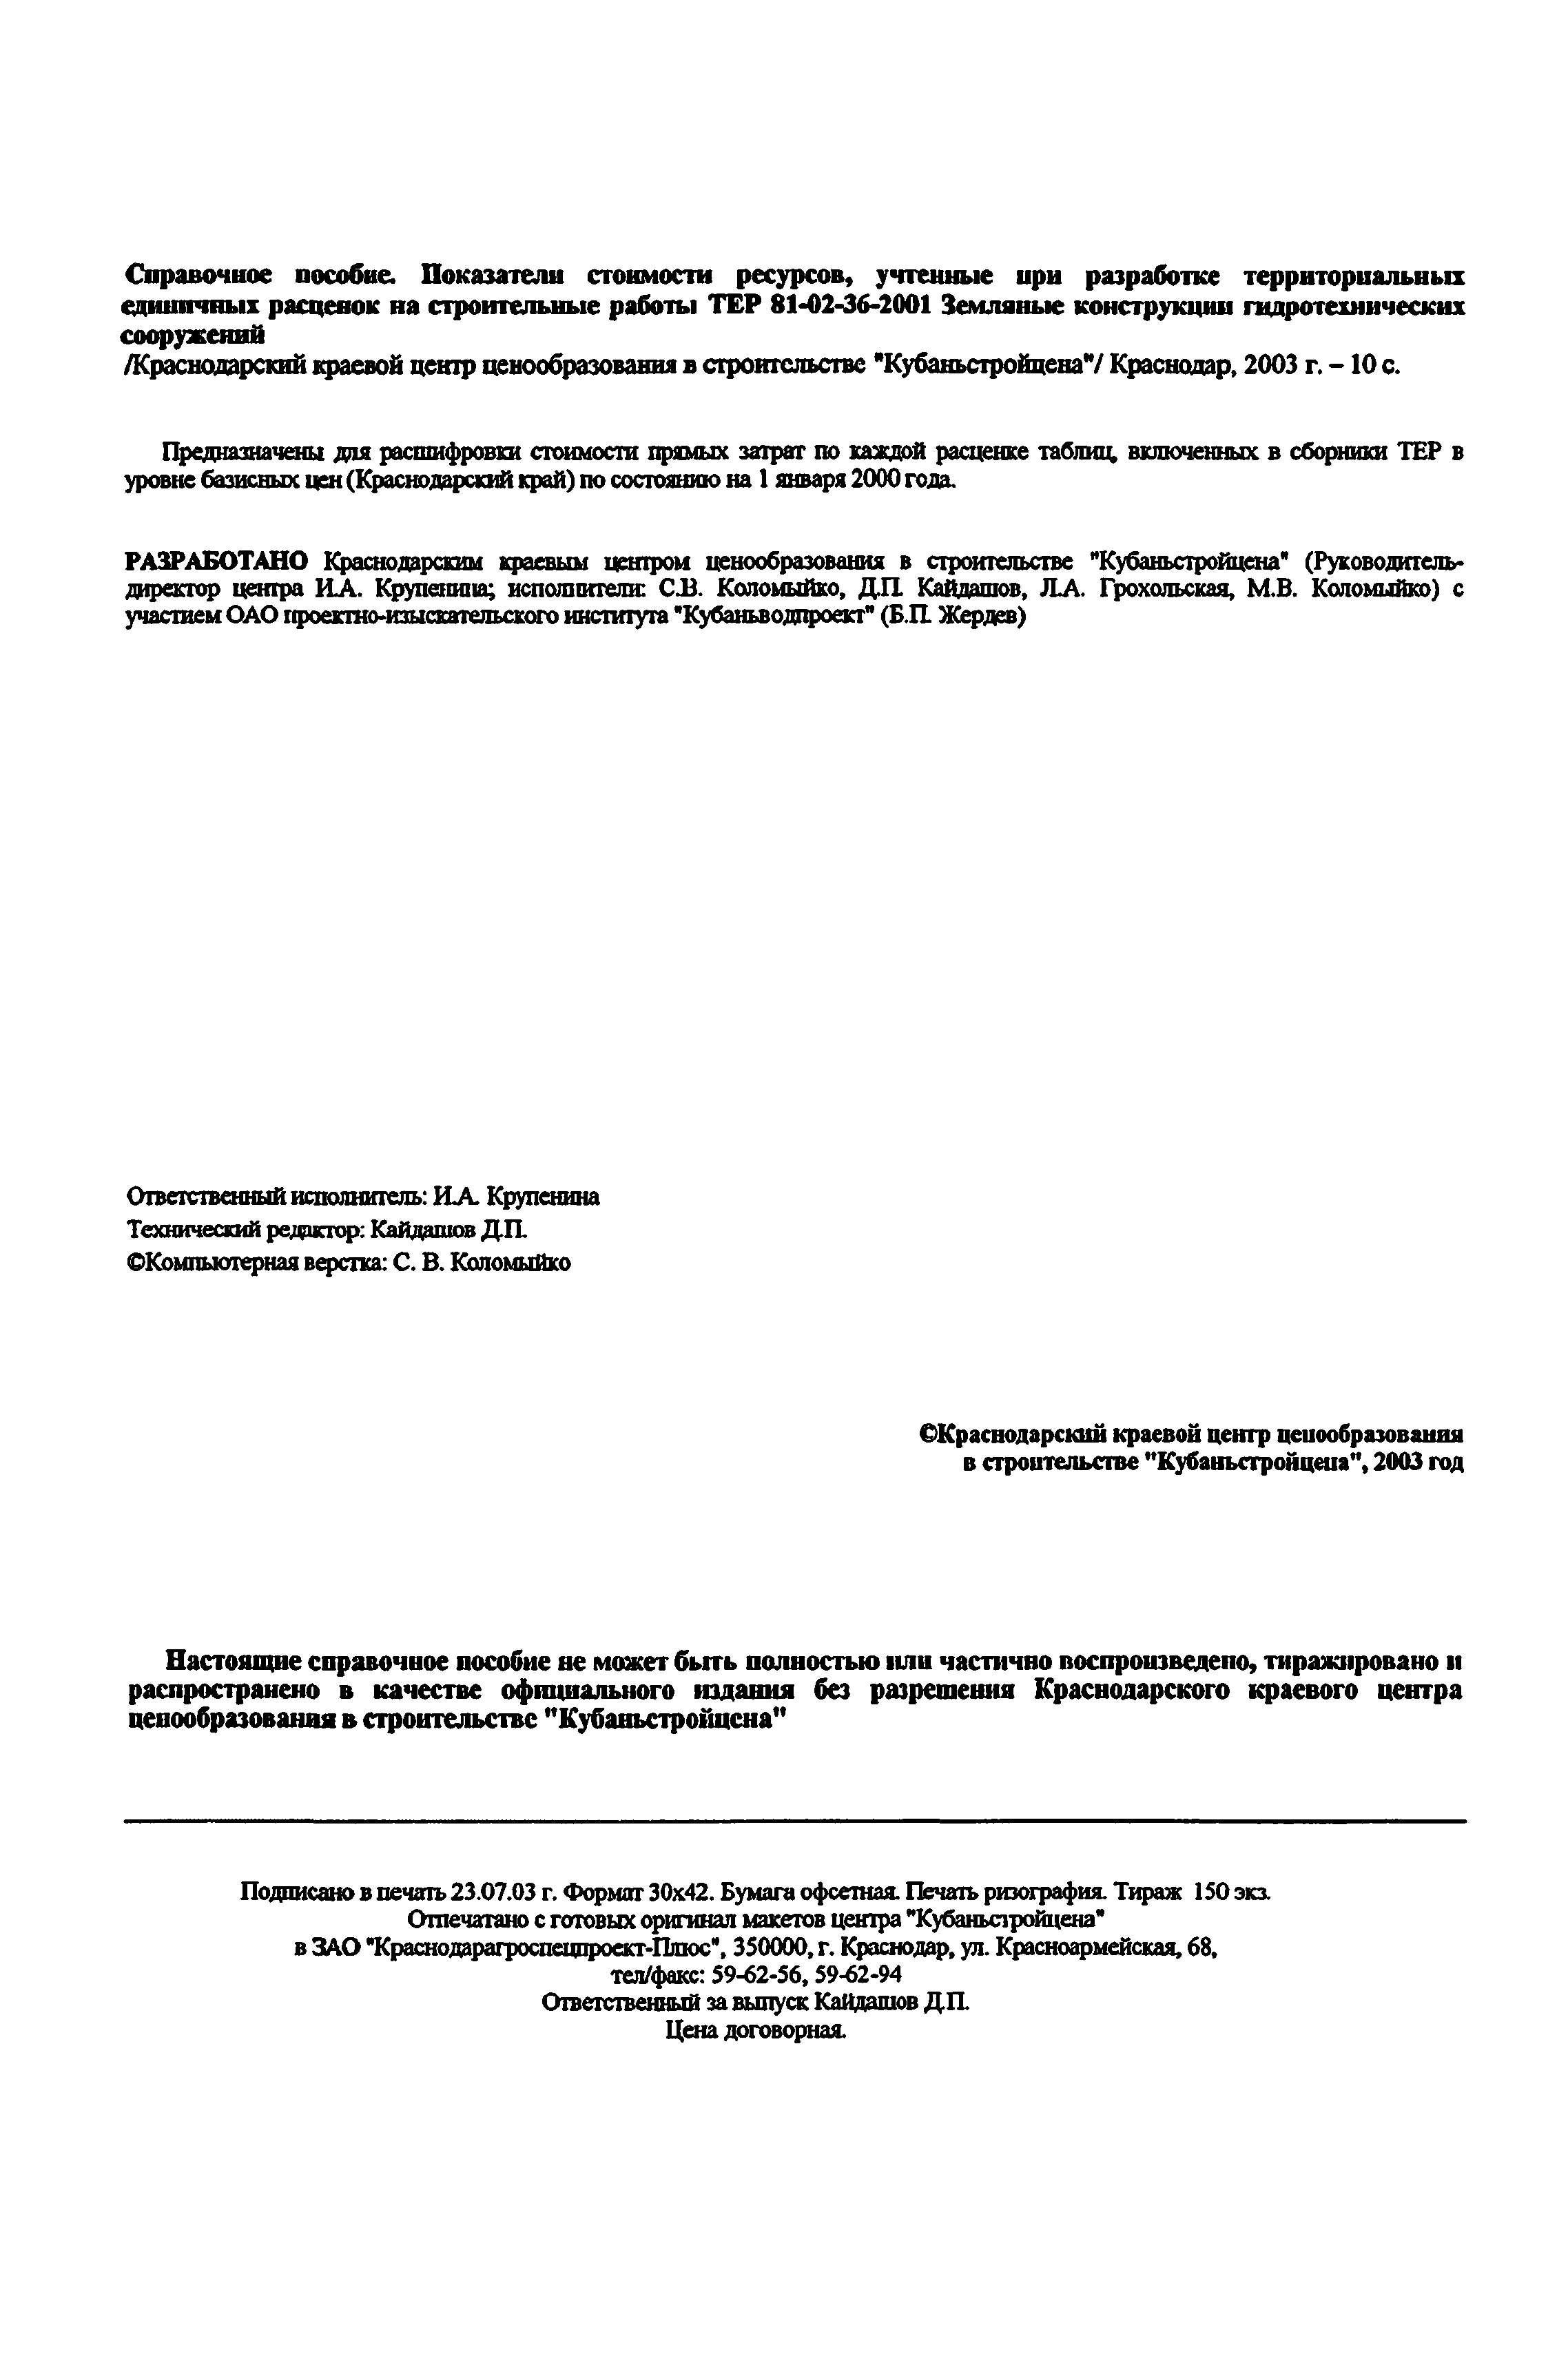 Справочное пособие к ТЕР 81-02-36-2001